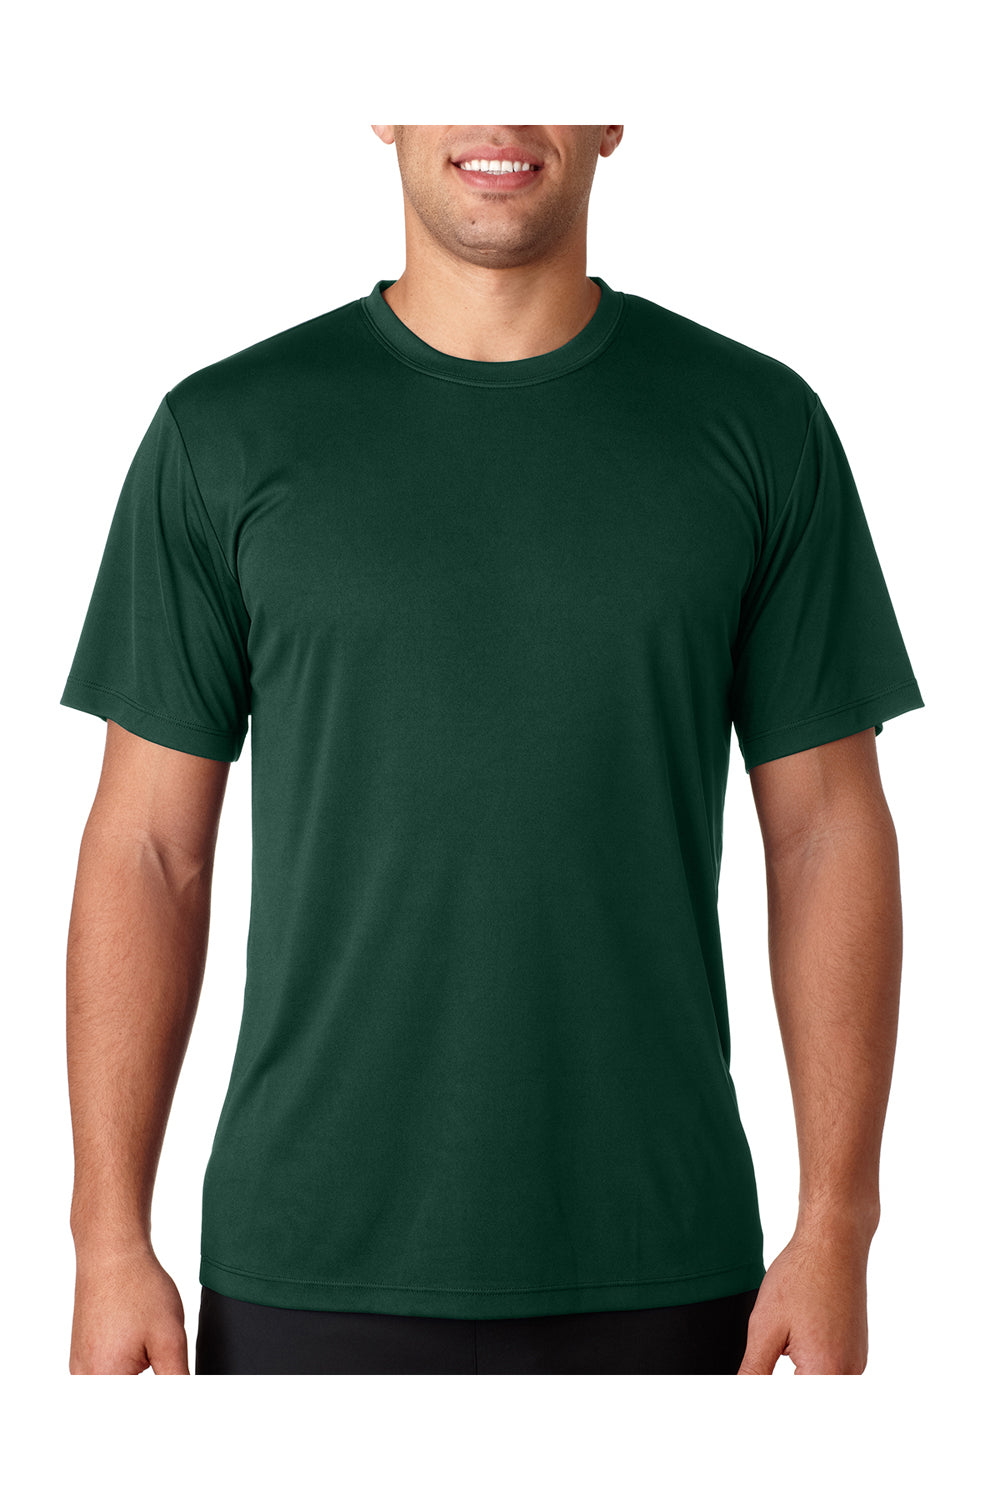 Hanes Tagless T-Shirt Deep Forest / L